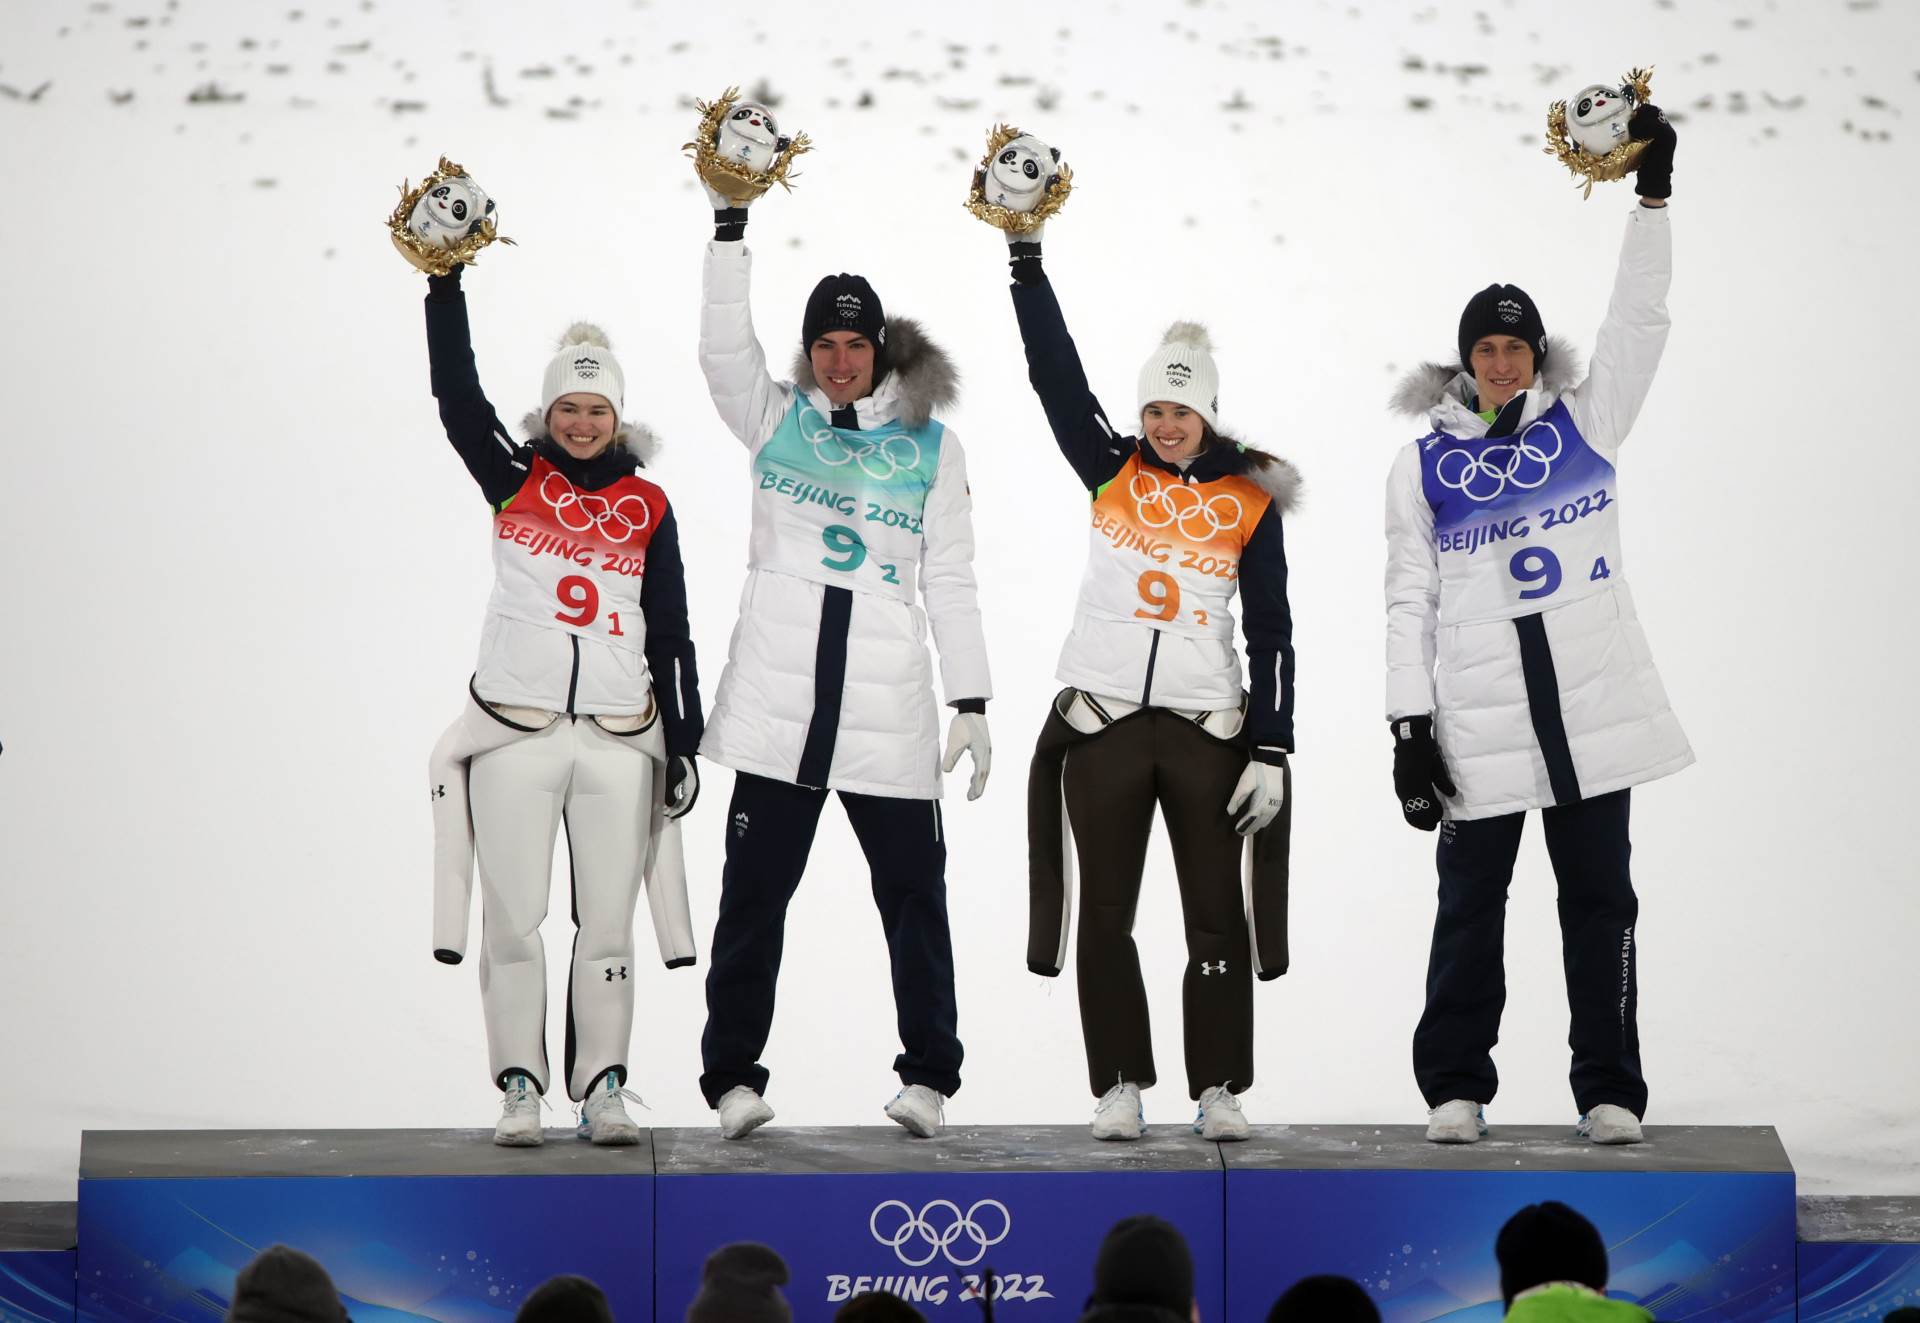  zoi 2022 slovenija medalje u ski skokovima  